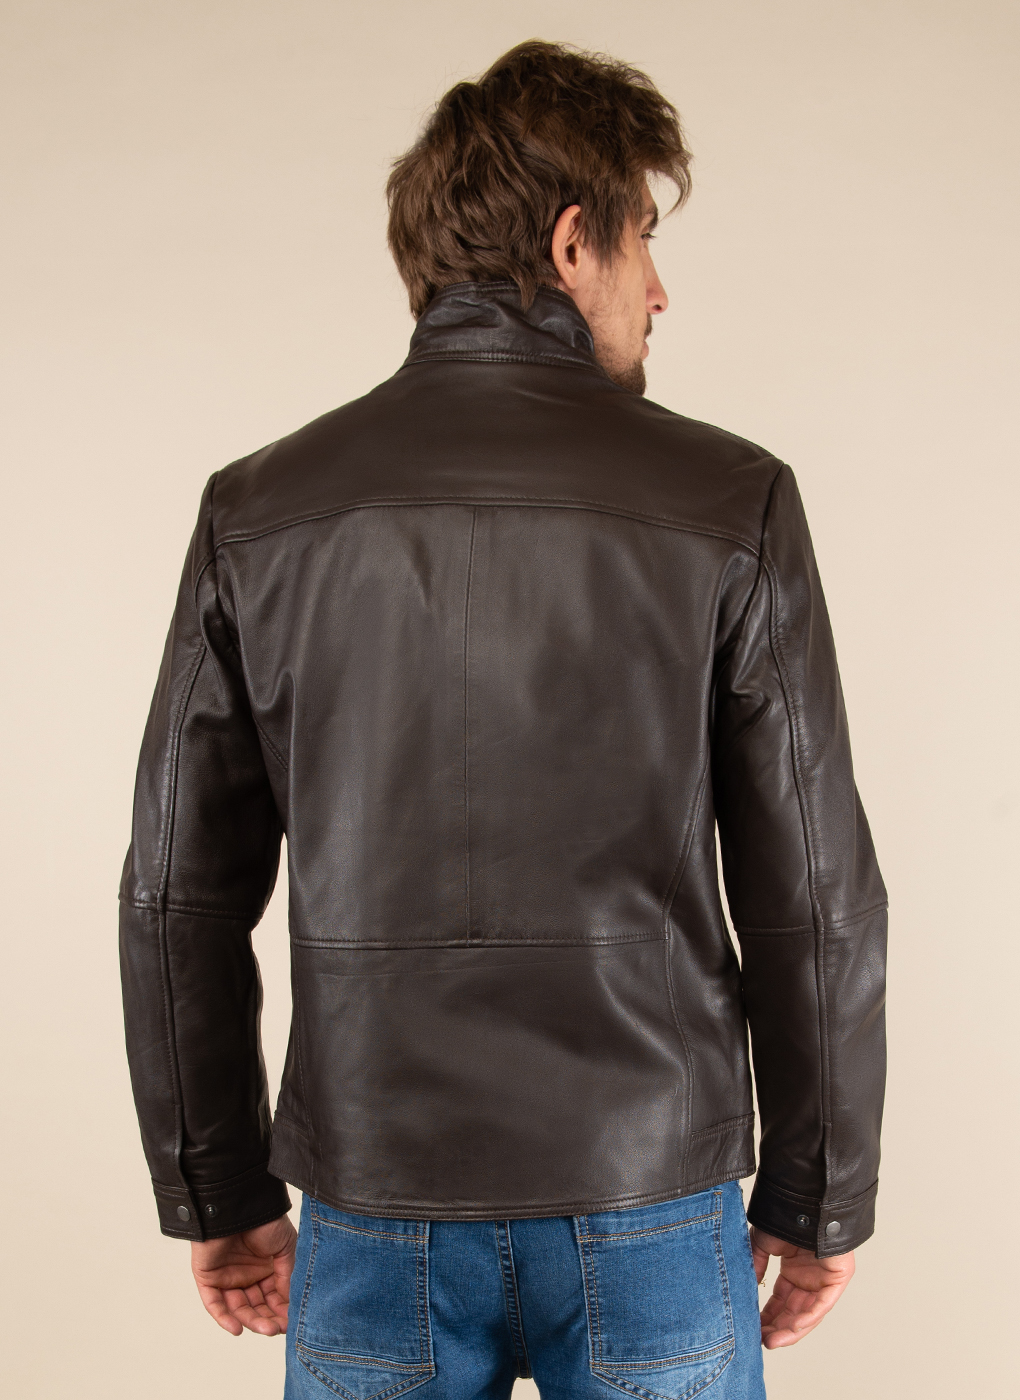 Кожаная куртка мужская Каляев 51795 коричневая 58 RU